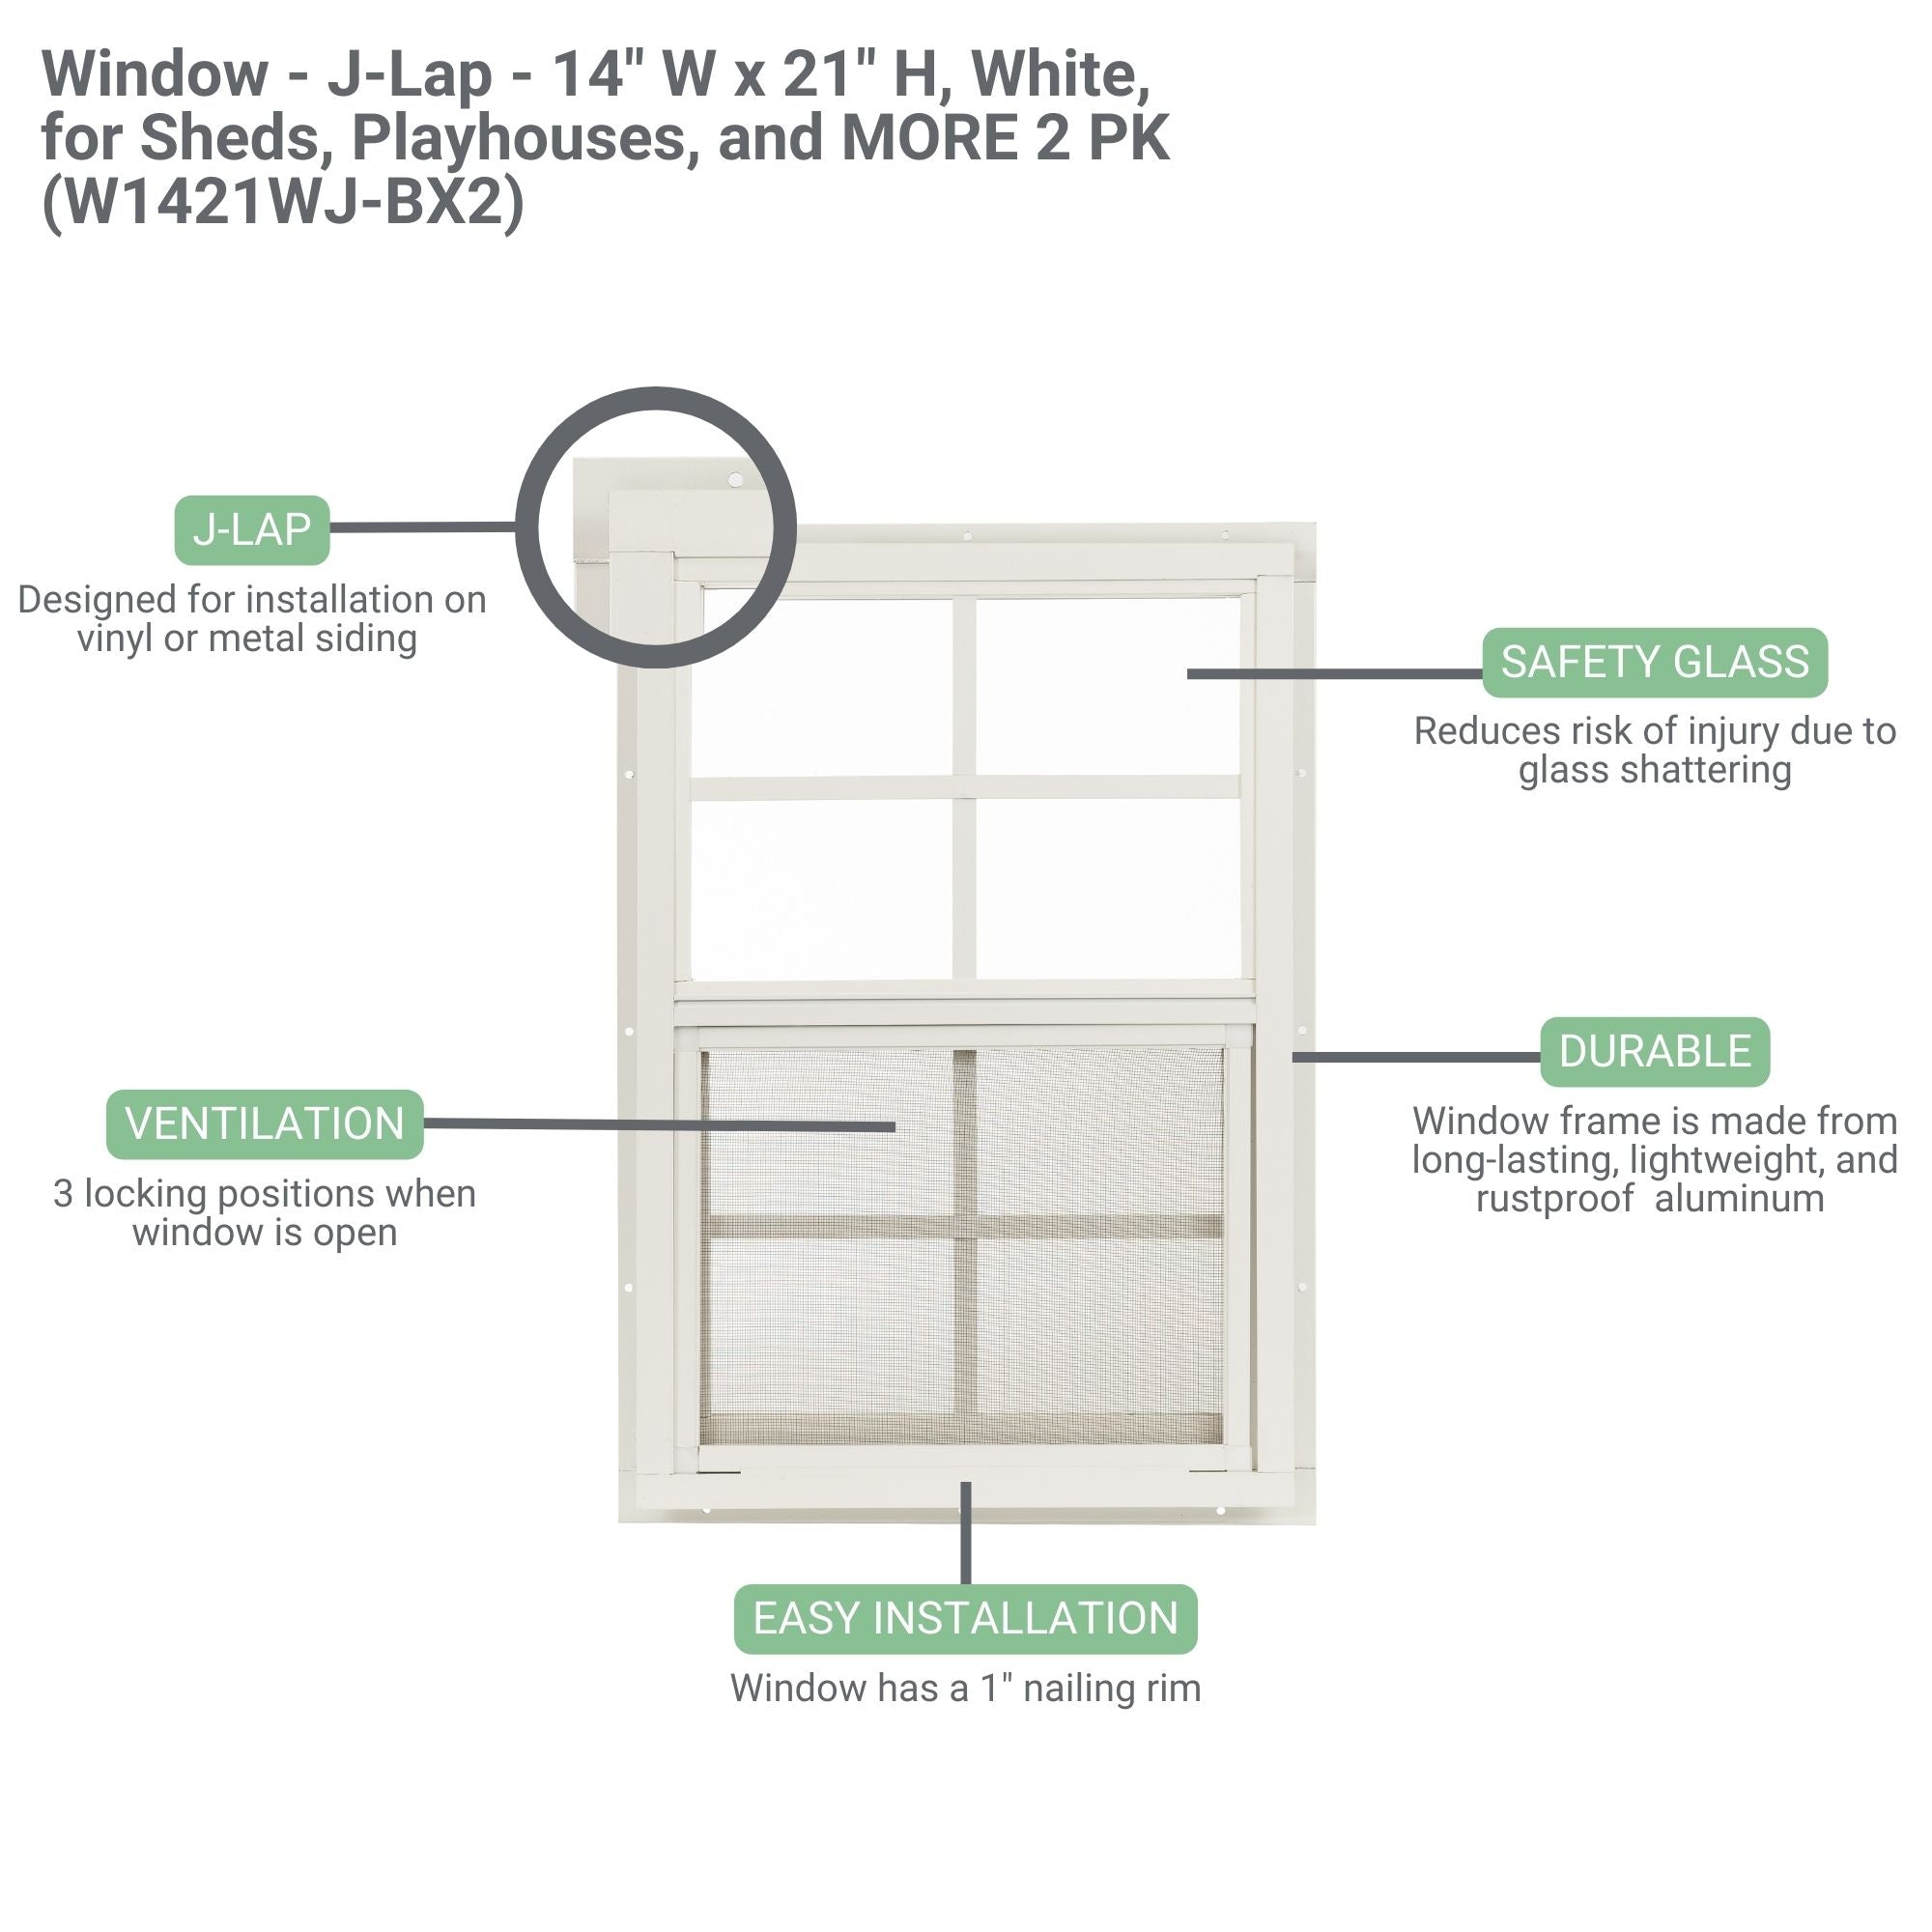 14" W x 21" H J-Lap Shed Window, 2 PK